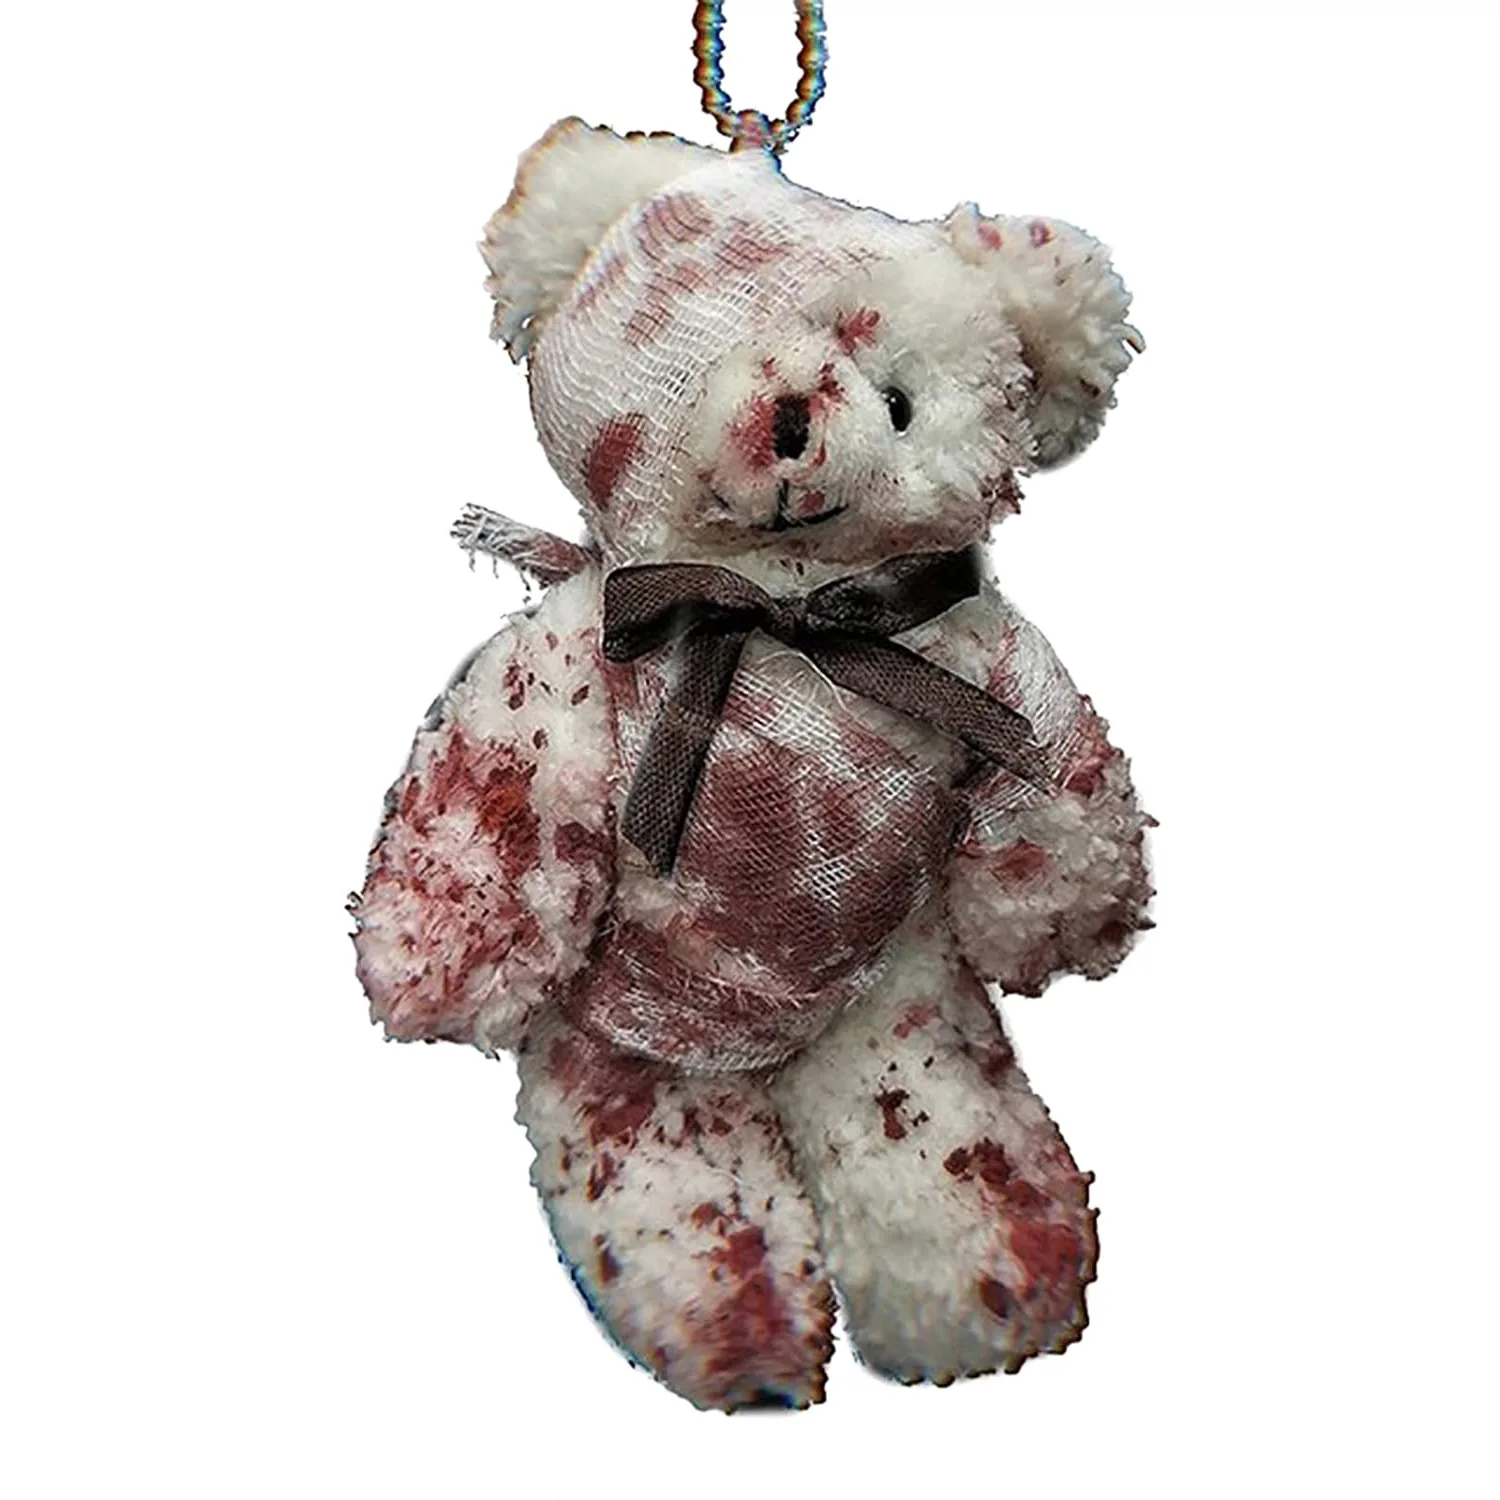 

Брелок для ключей в виде кровавого медведя, крутой плюшевый медведь в стиле панк, брелок для ключей с поврежденным медведем, брелок для ключ...